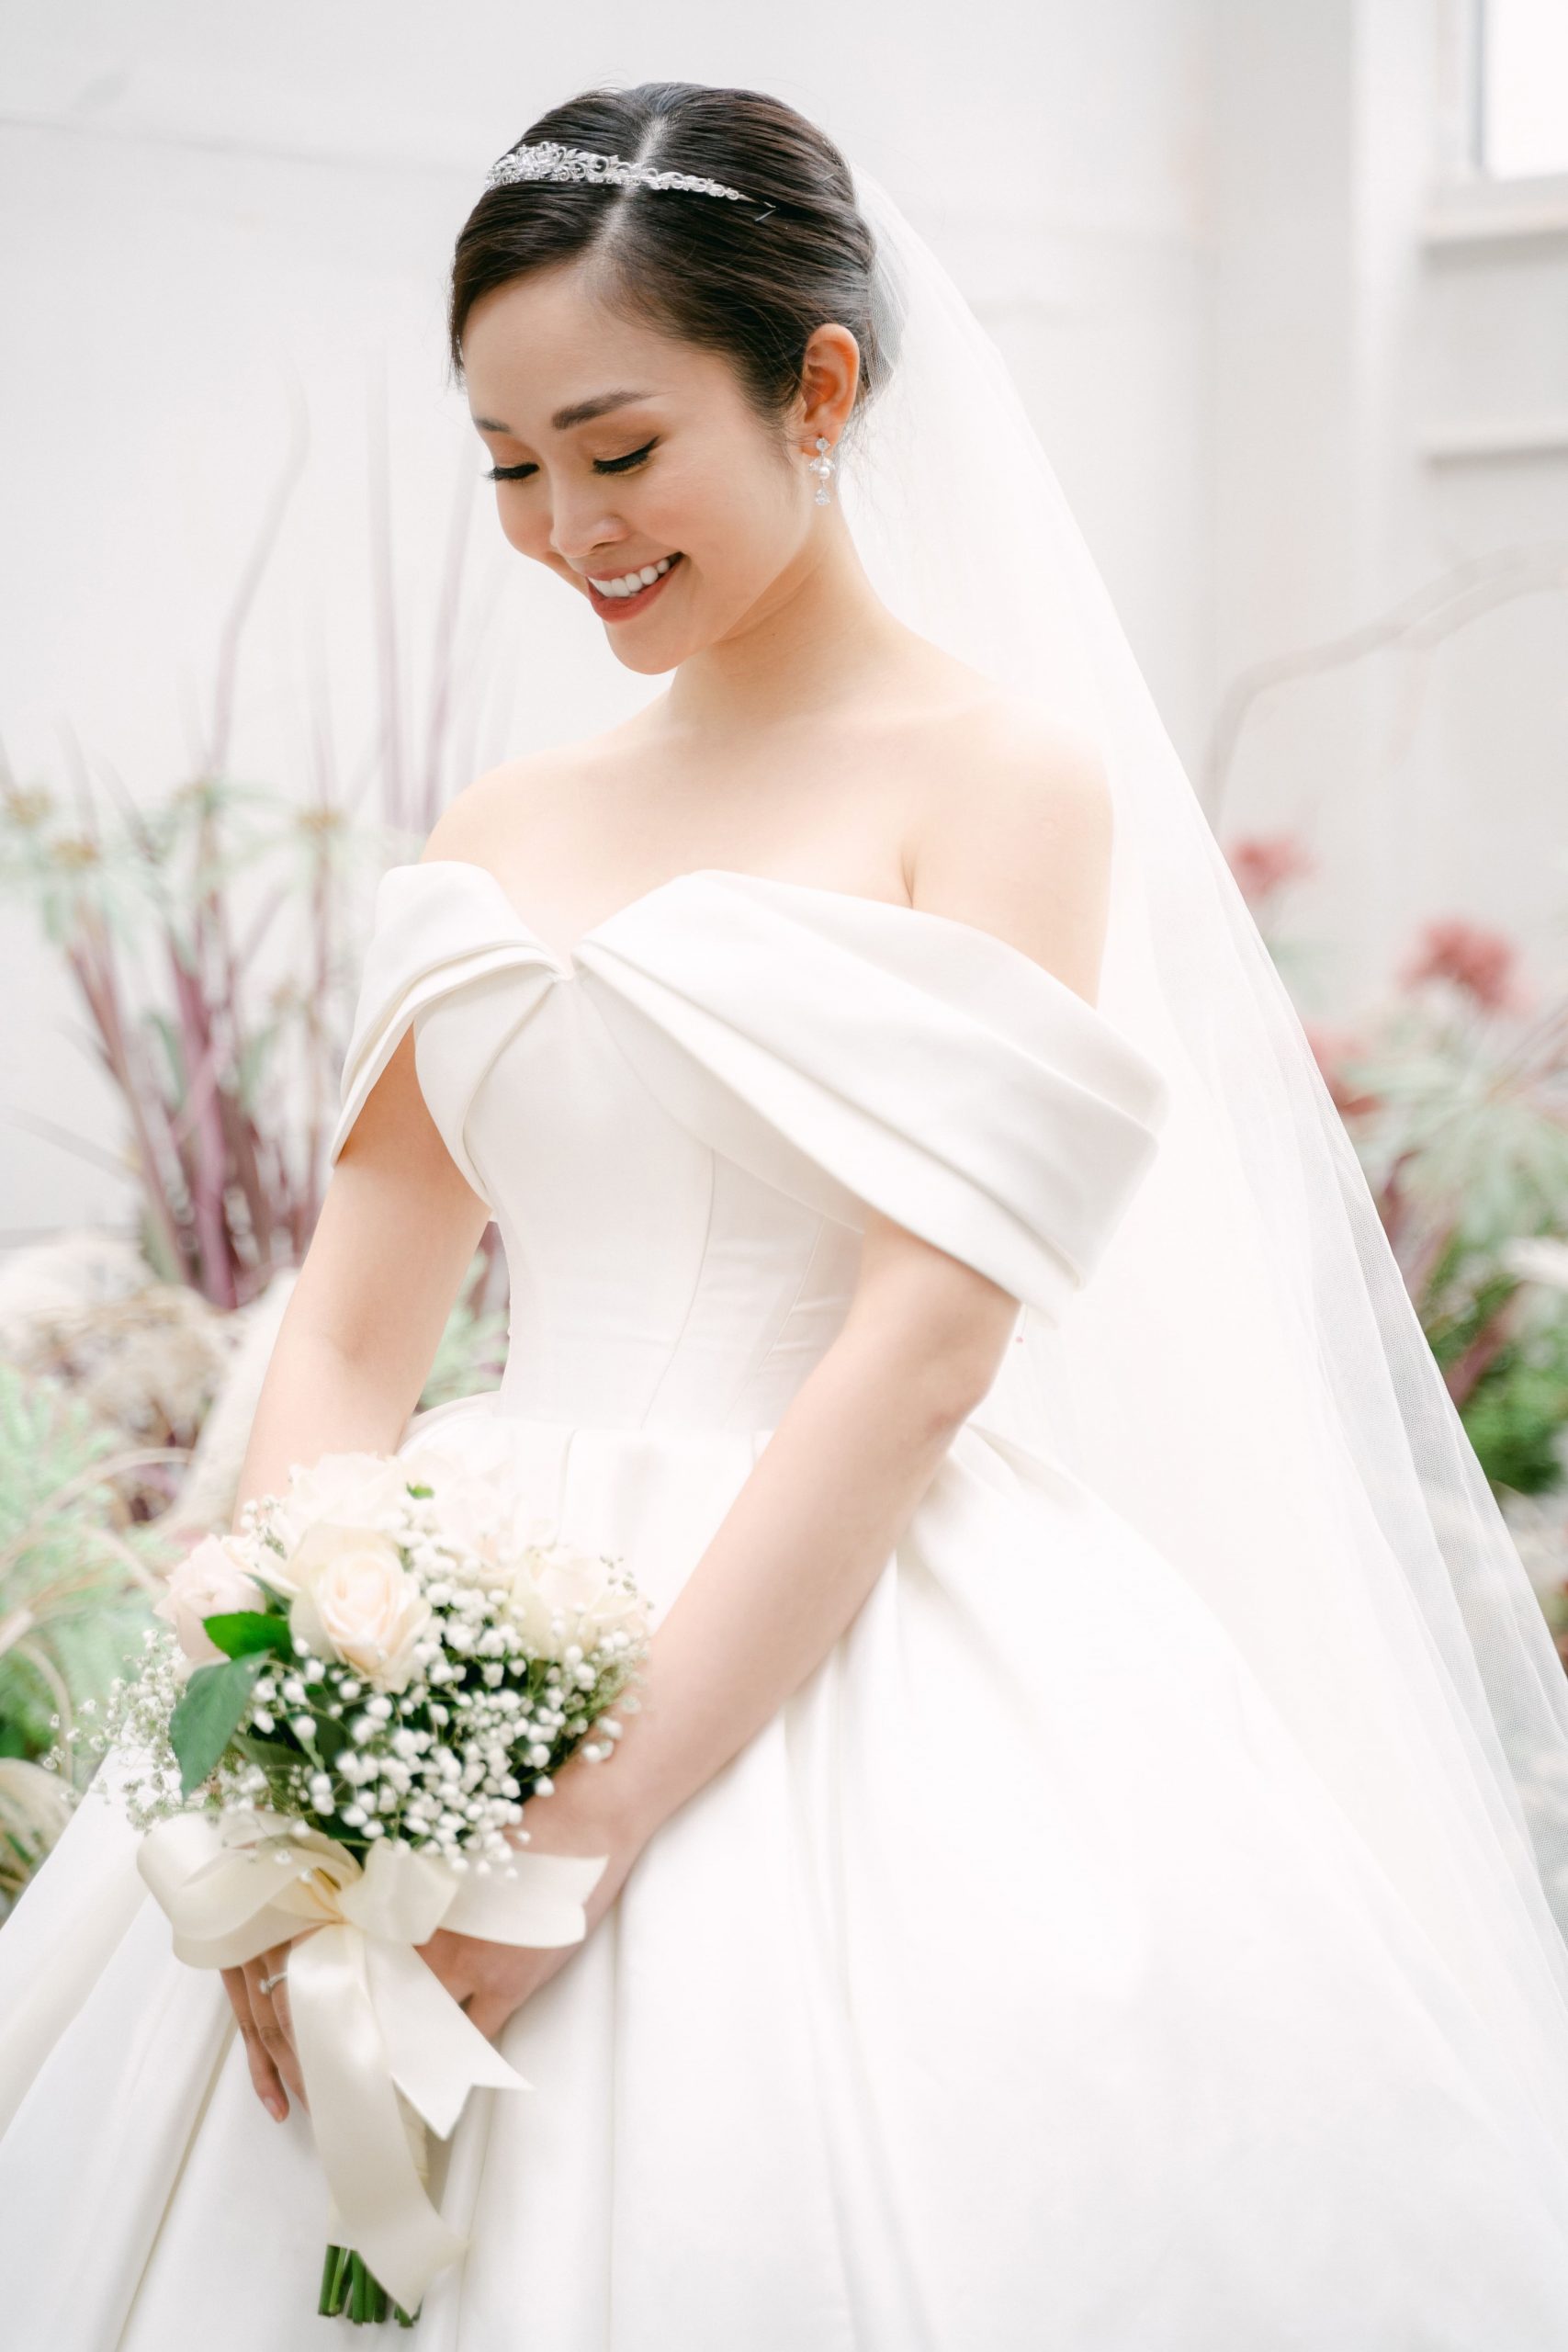 Cô dâu Thùy Linh xinh đẹp trong váy cưới trễ vai của Linh Nga Bridal